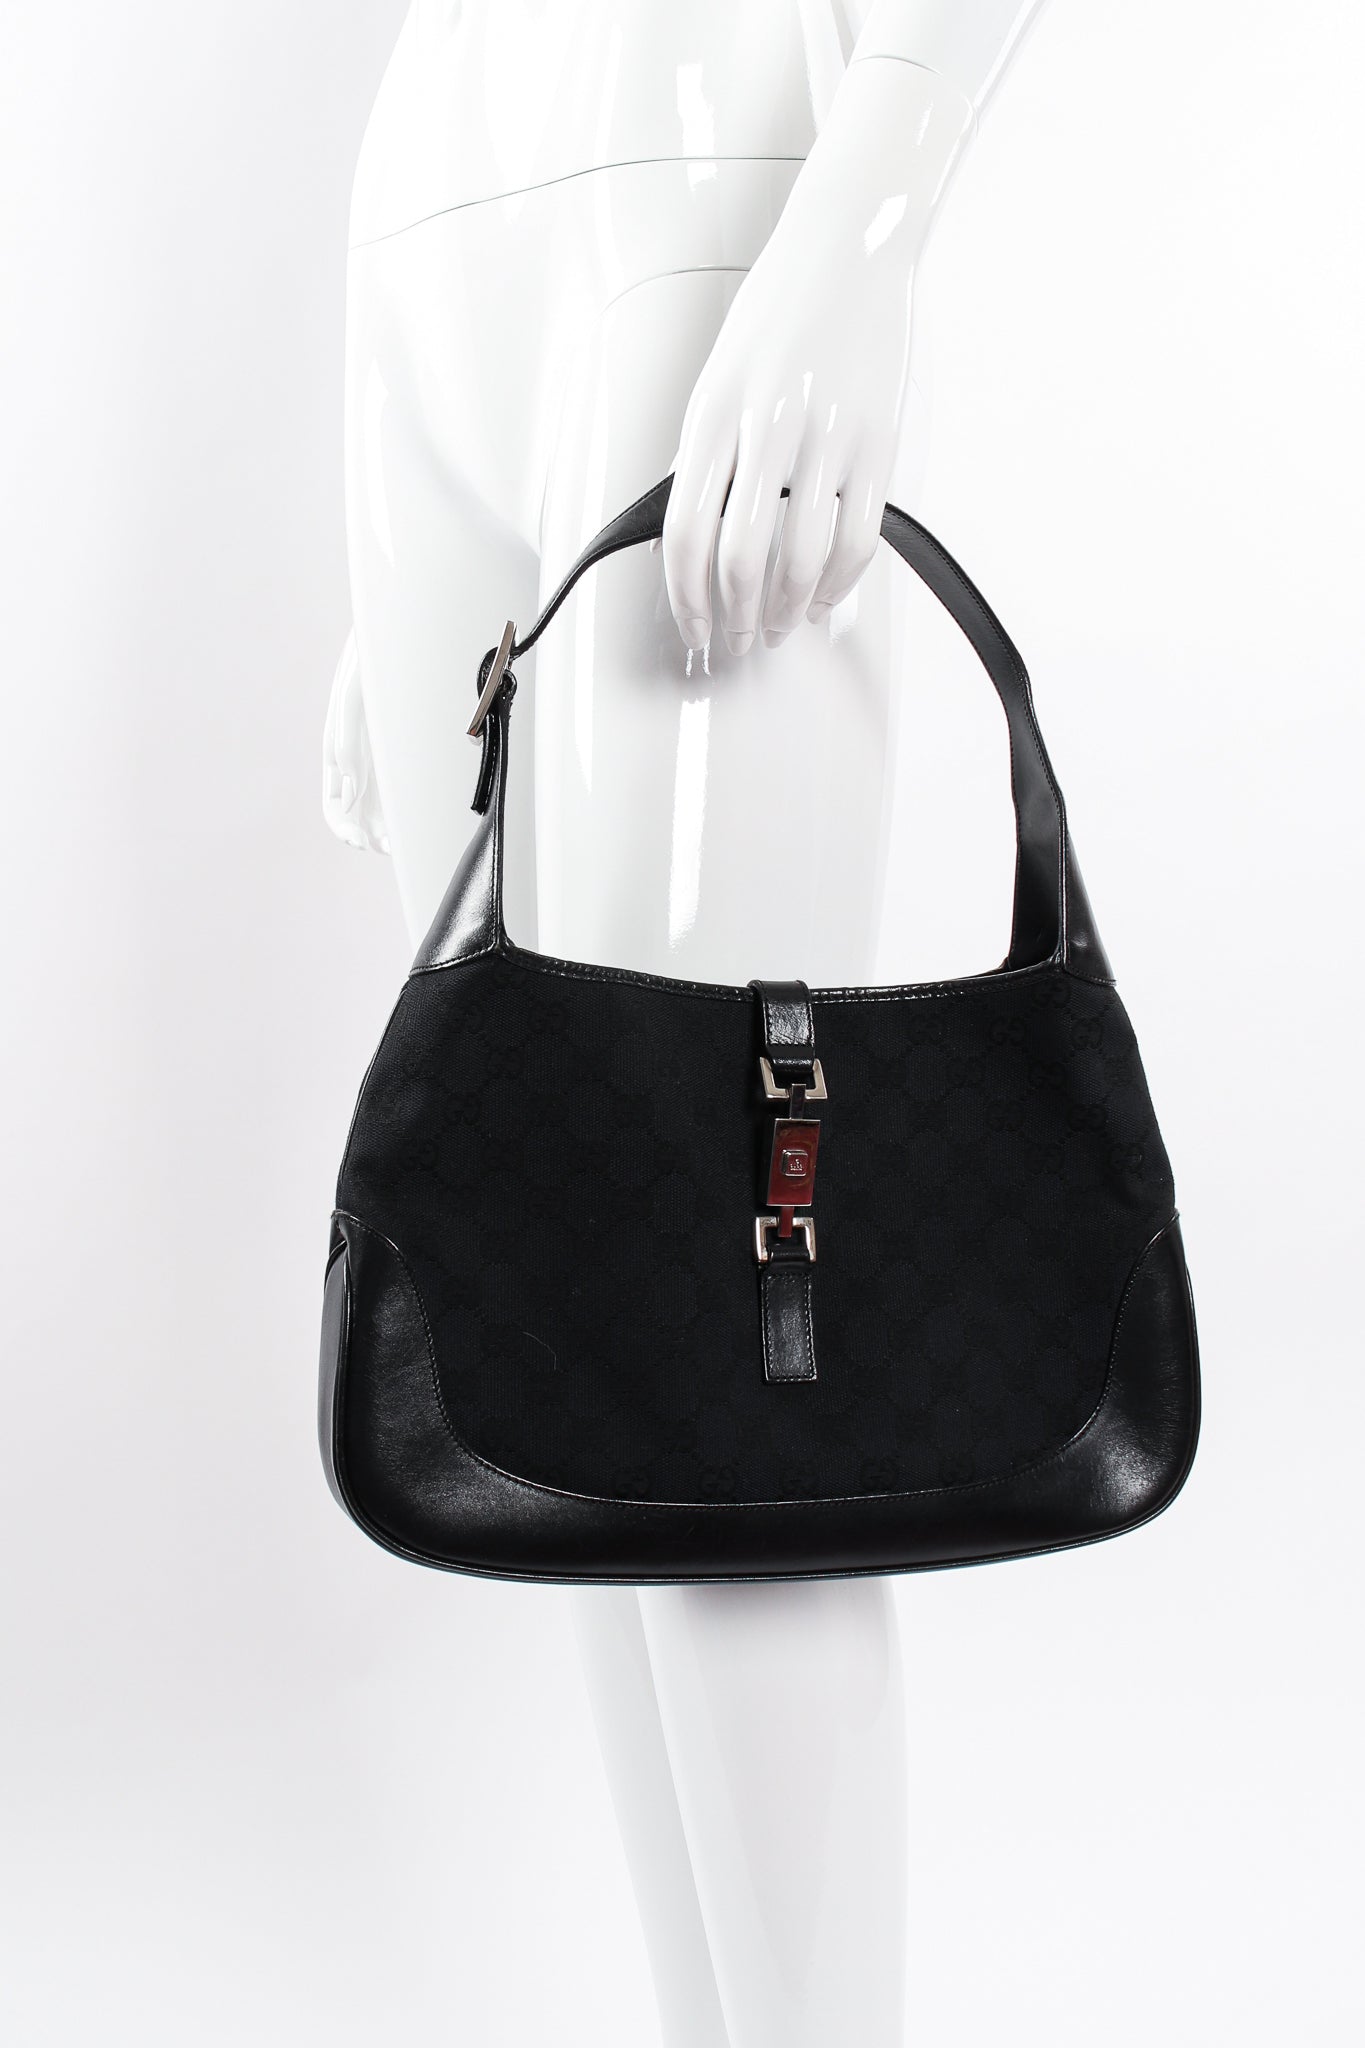 Gucci Design Leather Bag in Kosofe - Computer Accessories , Joe